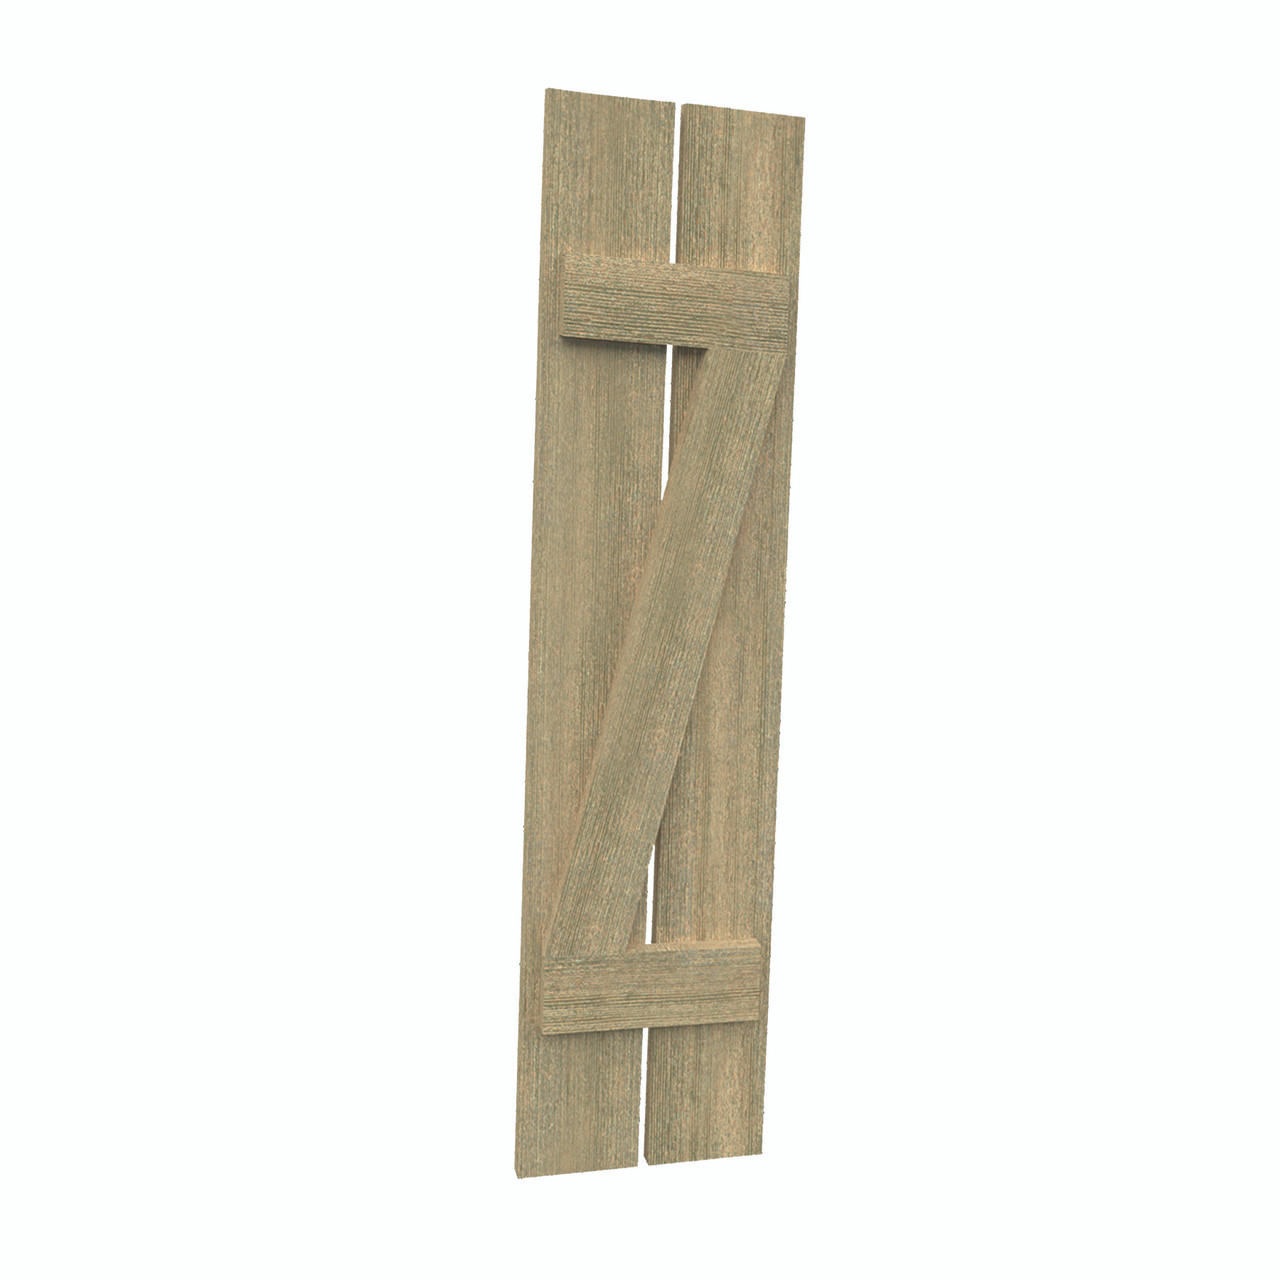 12 inch by 32 inch Plank Shutter with 2-Plank, Z-Batten